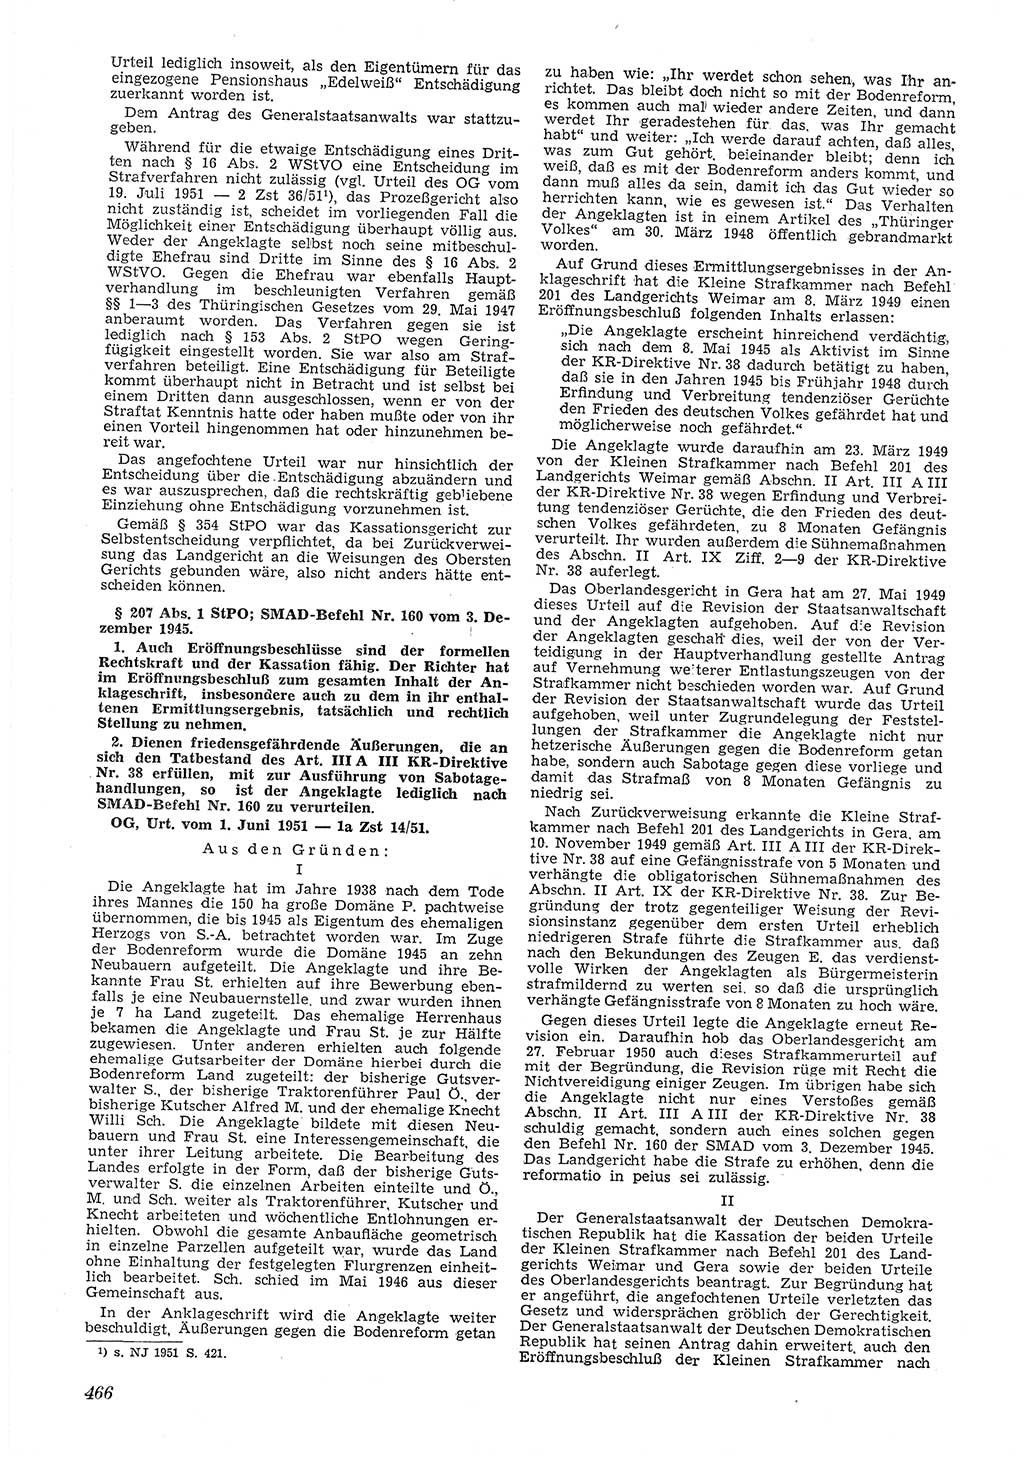 Neue Justiz (NJ), Zeitschrift für Recht und Rechtswissenschaft [Deutsche Demokratische Republik (DDR)], 5. Jahrgang 1951, Seite 466 (NJ DDR 1951, S. 466)